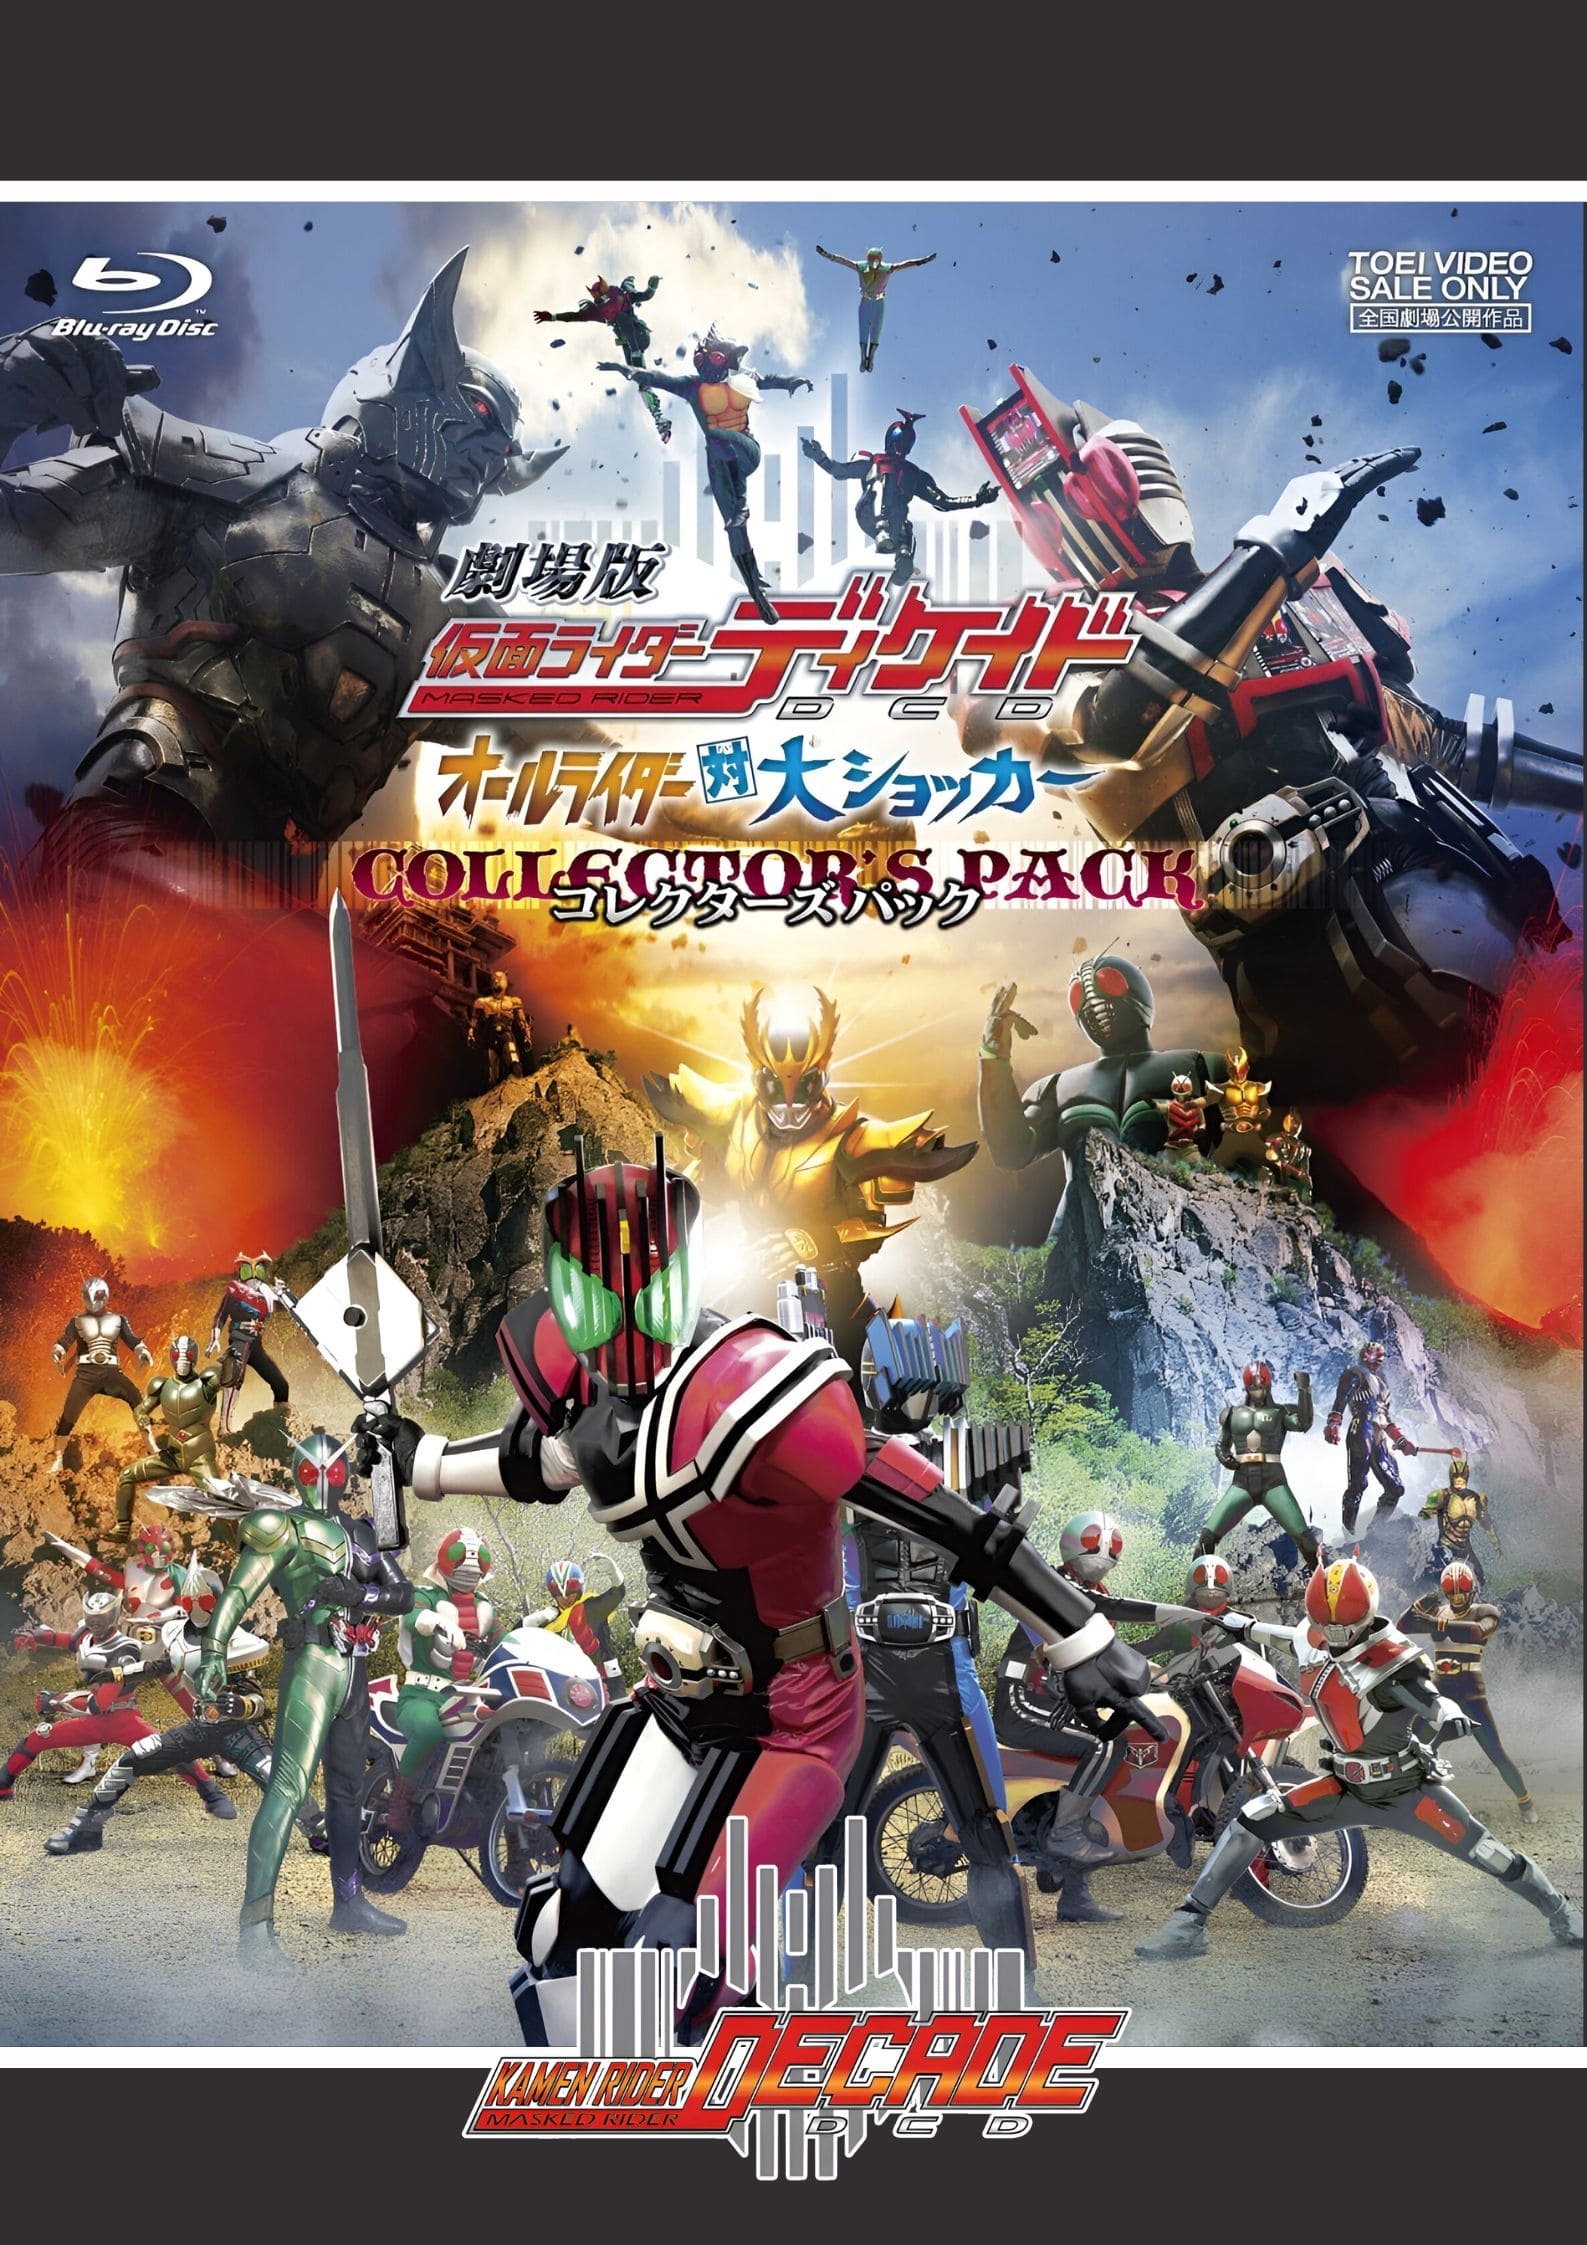 Kamen Rider × Kamen Rider W And Decade Movie War 2010 2009 Movie Where To Watch Streaming